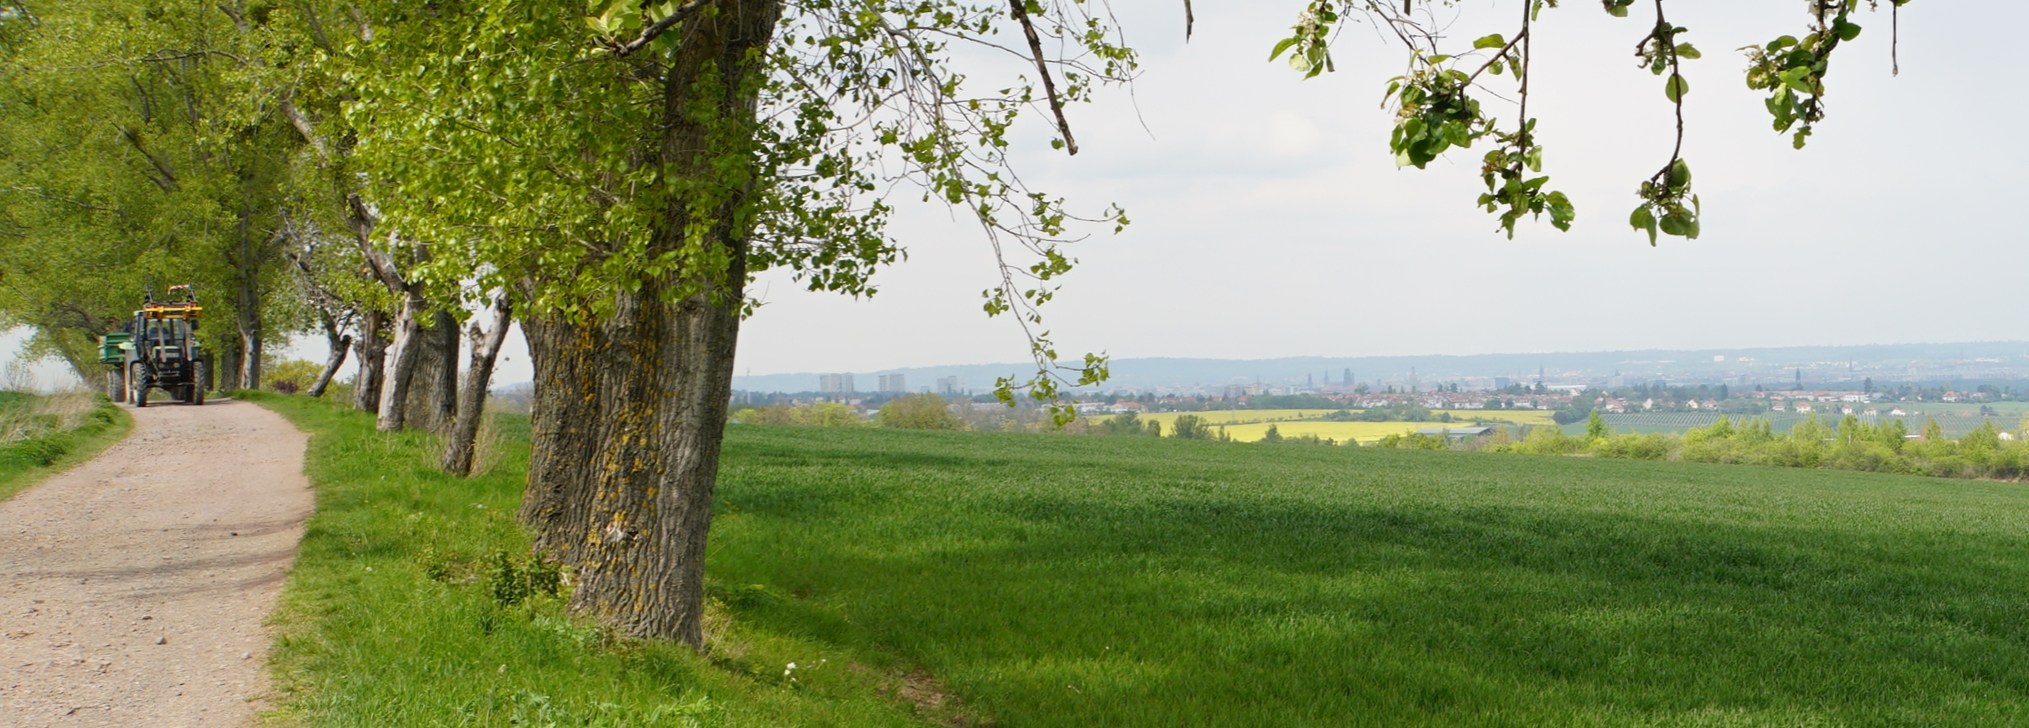 Eine Baumreihe, Felder und Hecken sowie in der Ferne das Stadtgebiet Dresdens. Im Hintergrund sind die Elbhänge zu sehen. Links fährt ein Traktor auf einem Feldweg.